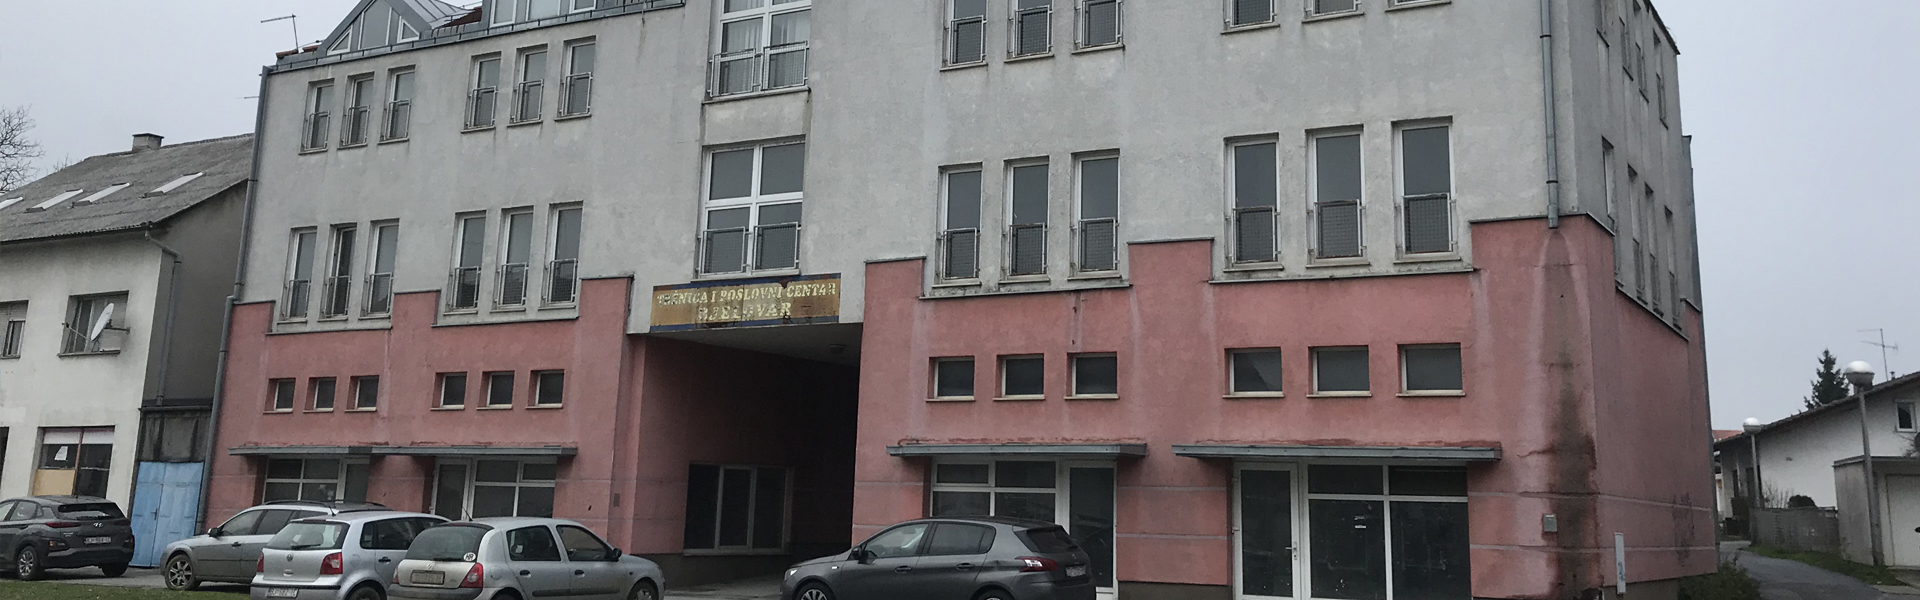 Poslovna zgrada - Bjelovar